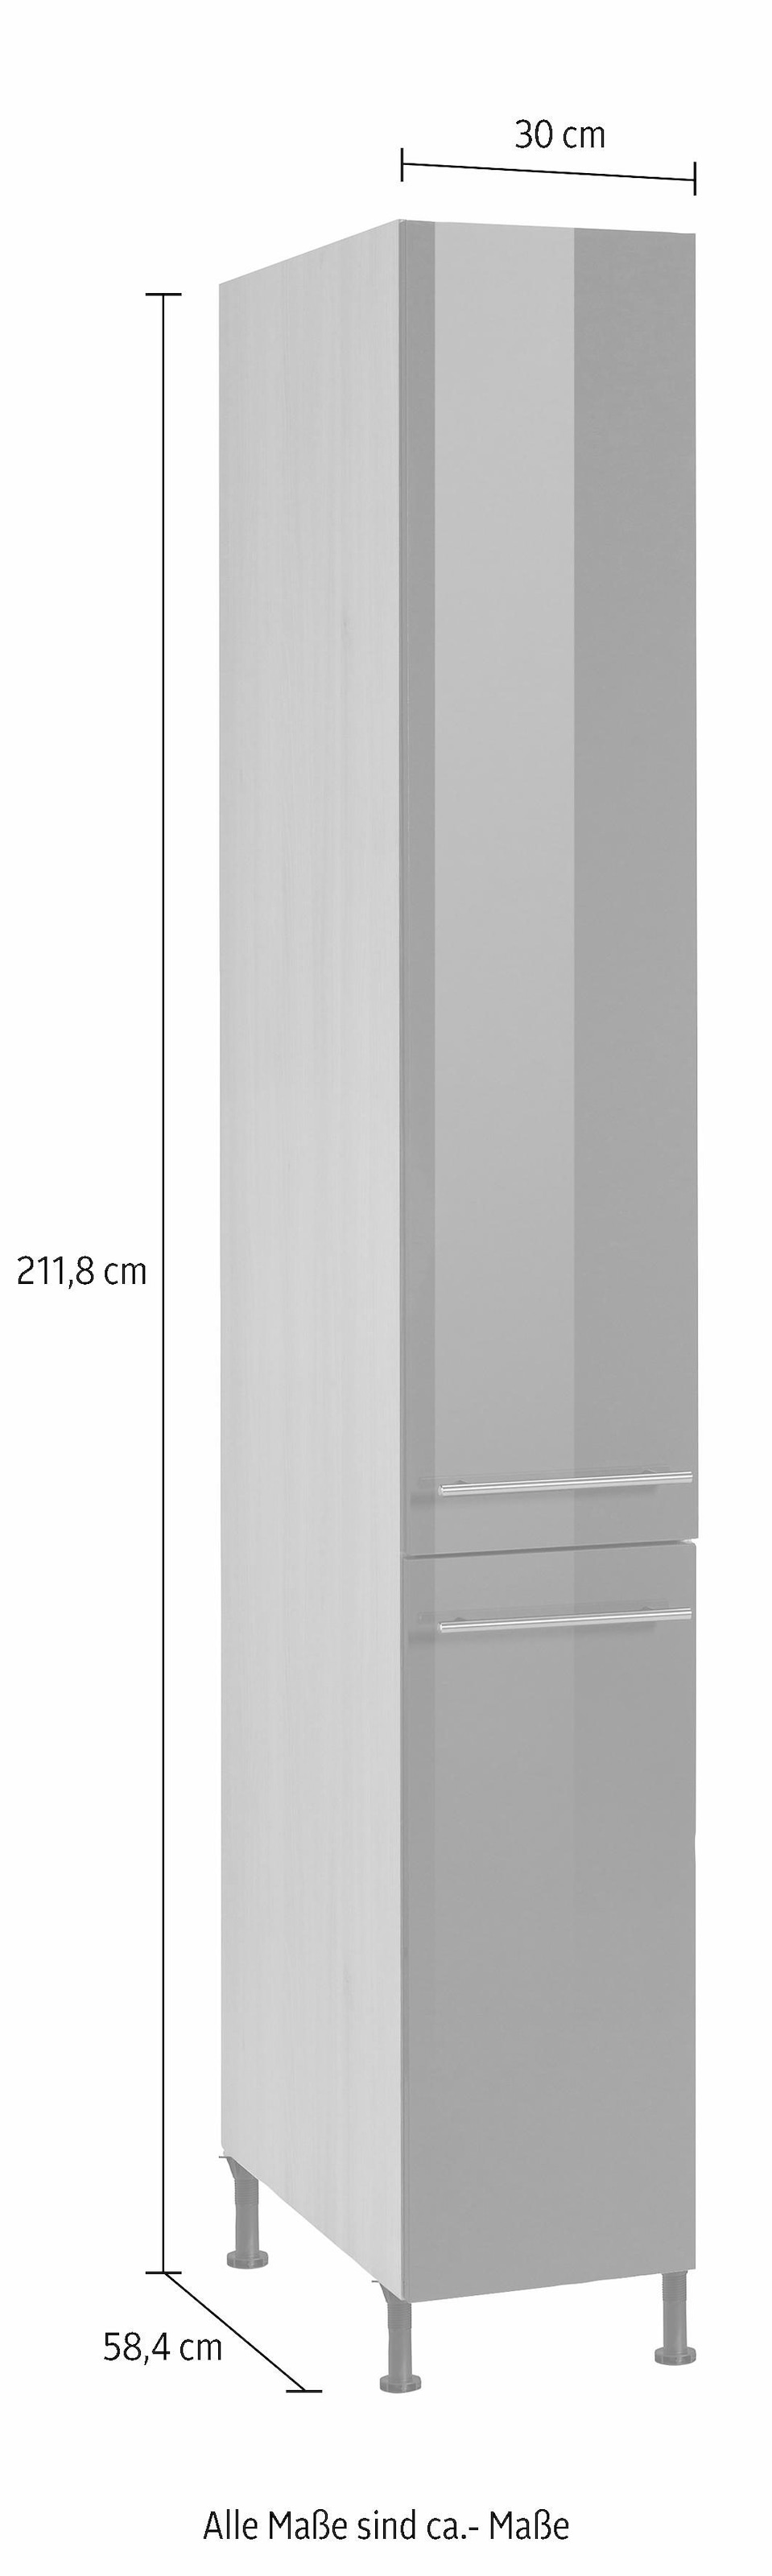 OPTIFIT Apothekerschrank »Bern«, 30 cm breit, 212 cm hoch, mit höhenverstellbaren Stellfüssen